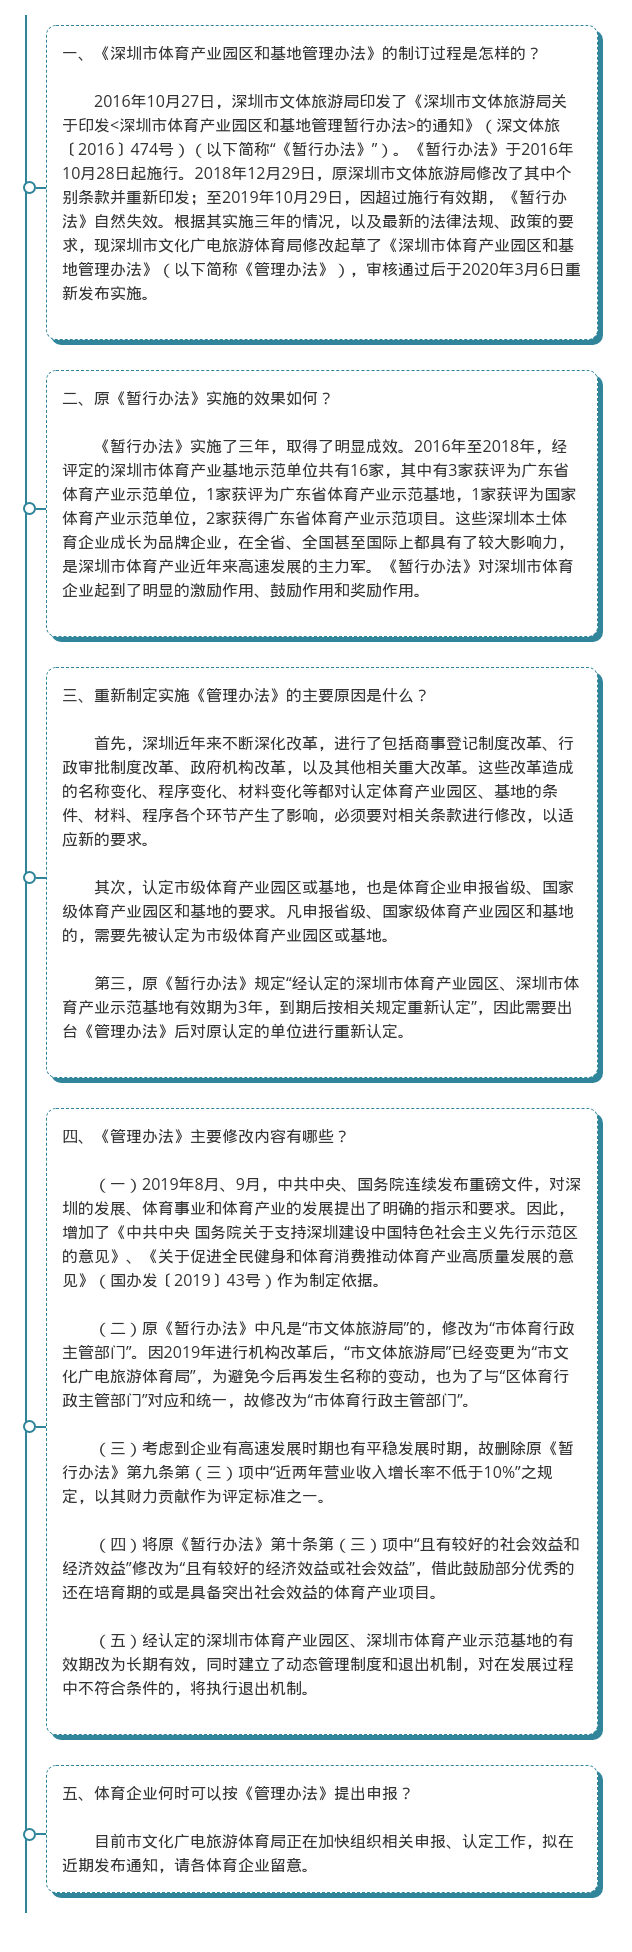 图解《深圳市体育产业园区和基地管理办法》政策解读